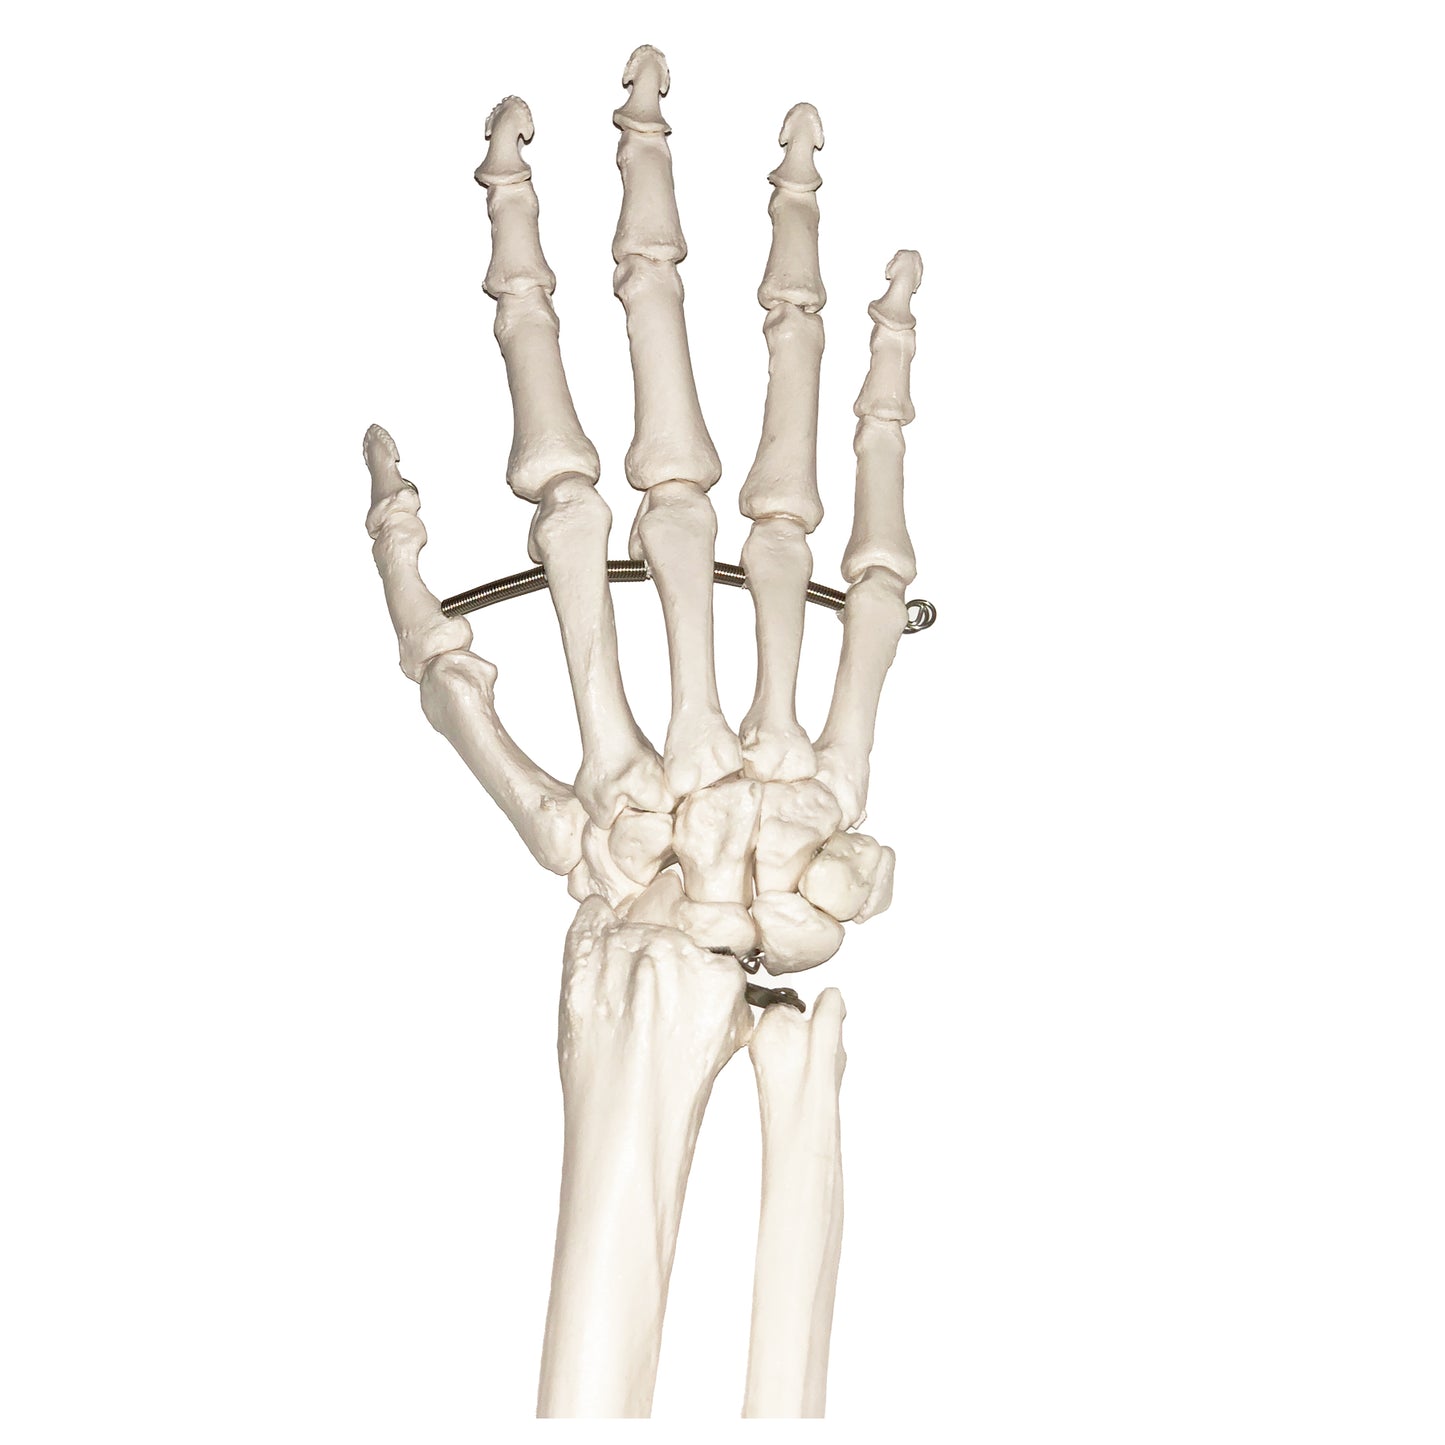 Modell av handens skelett och båda underarmsbenen